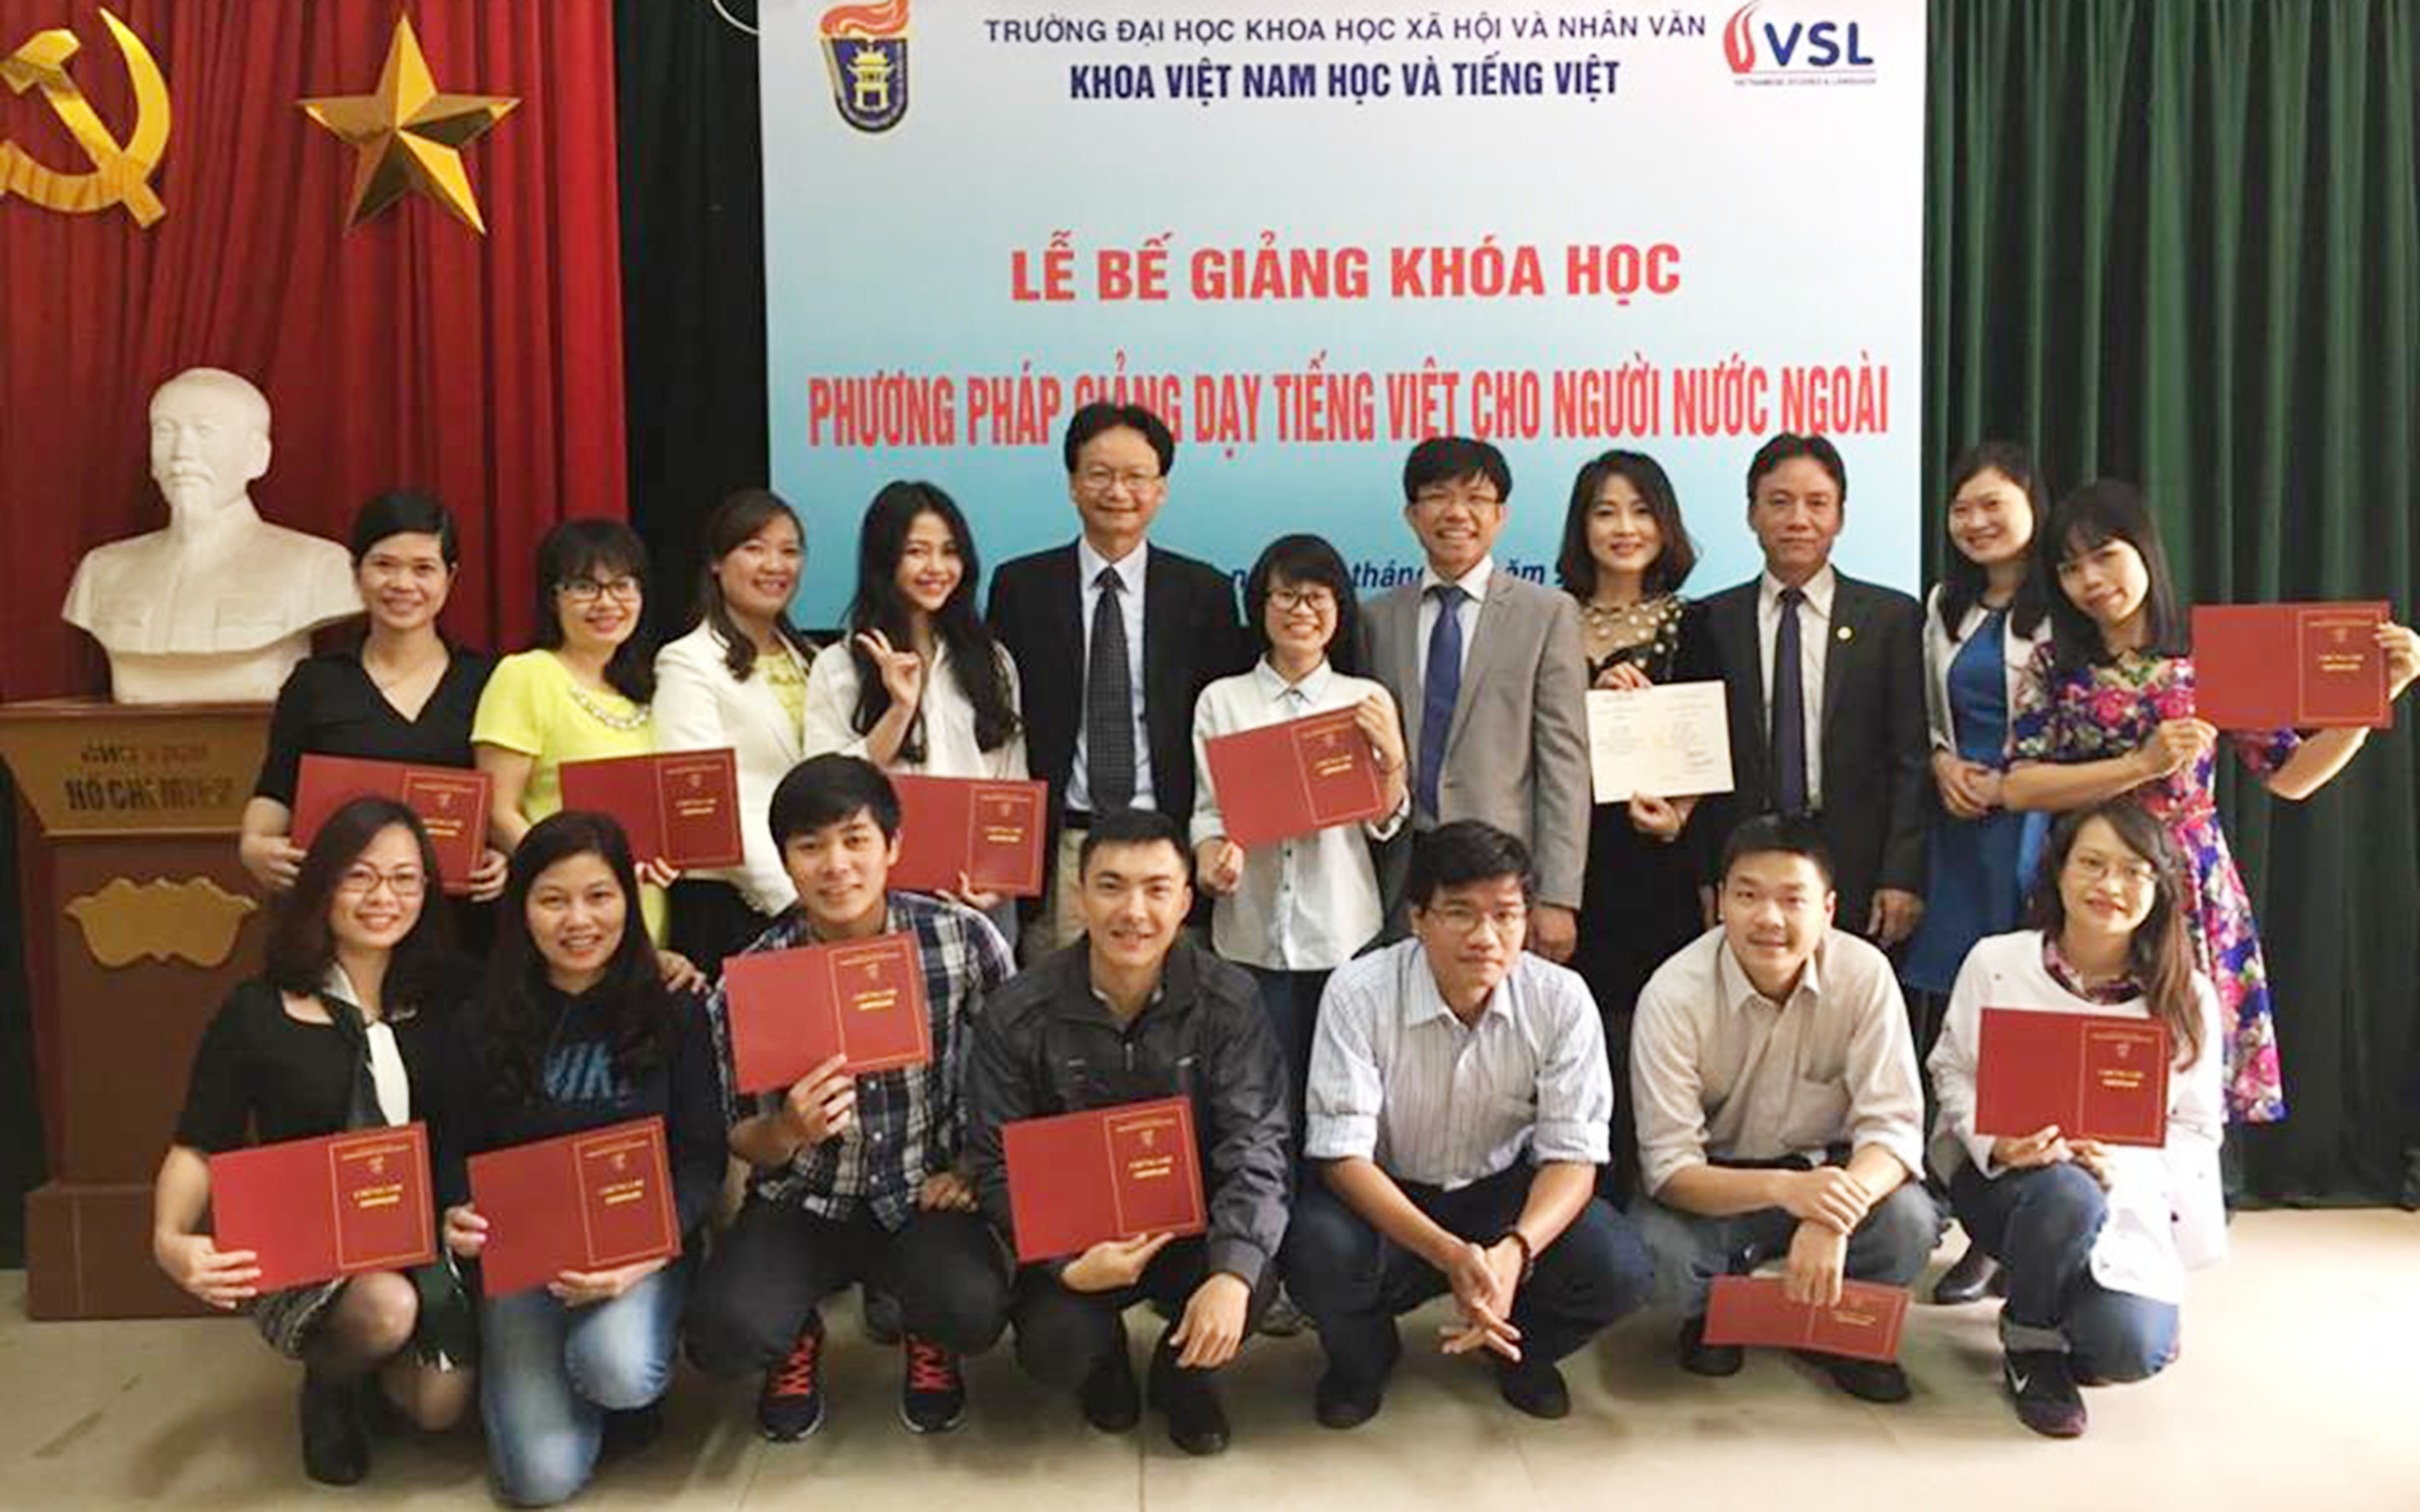 Bế giảng khóa học “Phương pháp giảng dạy tiếng Việt cho người nước ngoài”